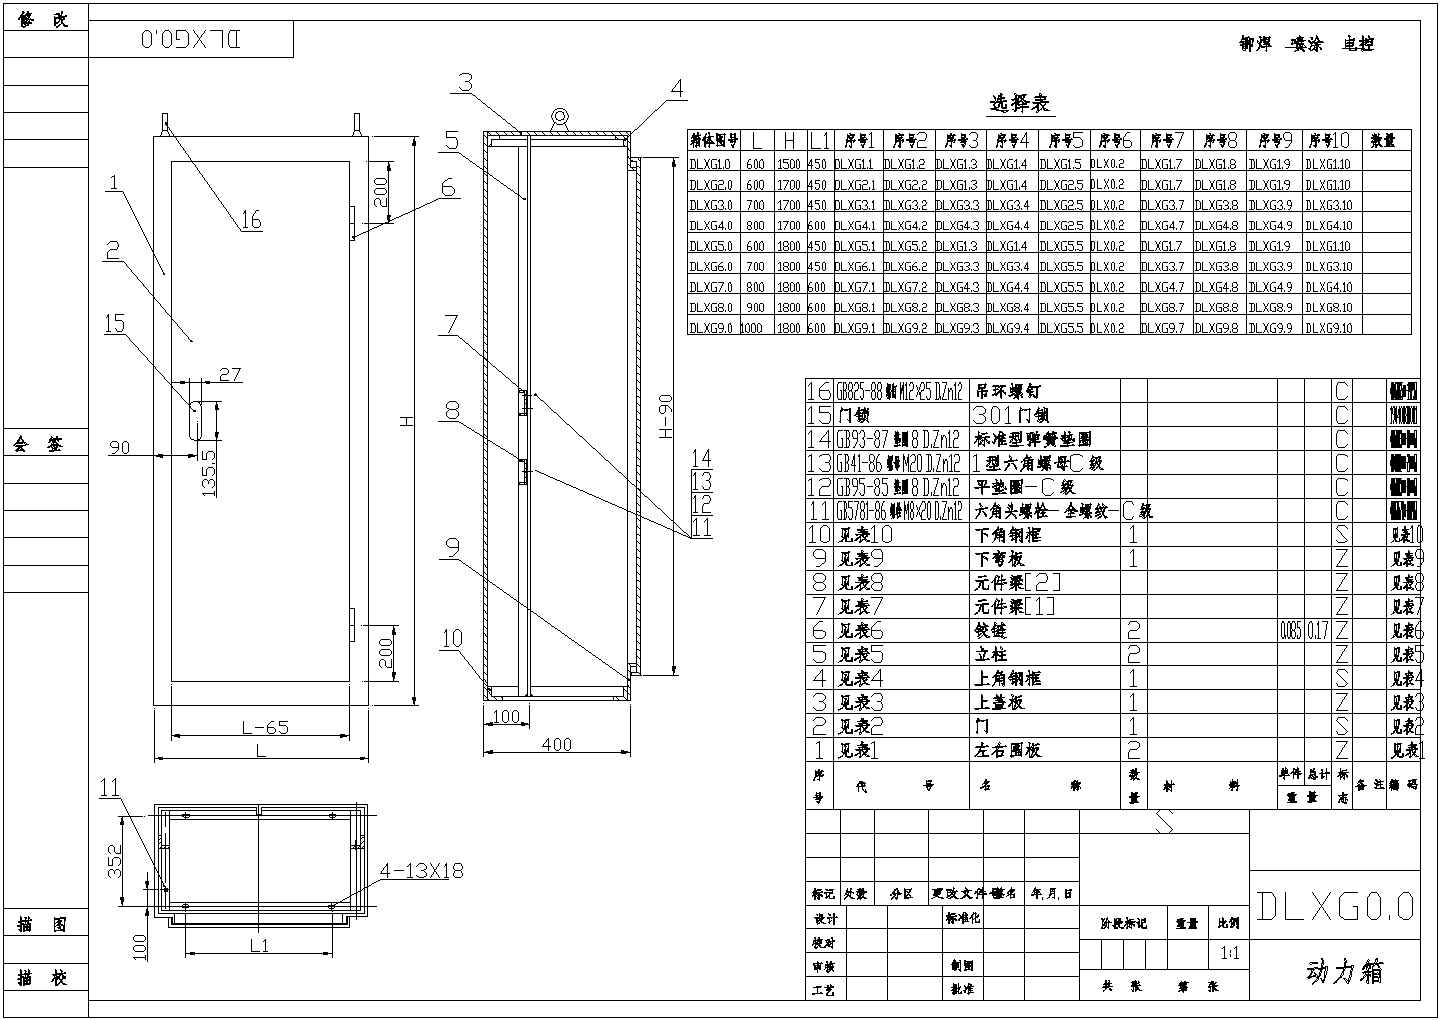 【上海市】某单位研发XL-21接线图纸